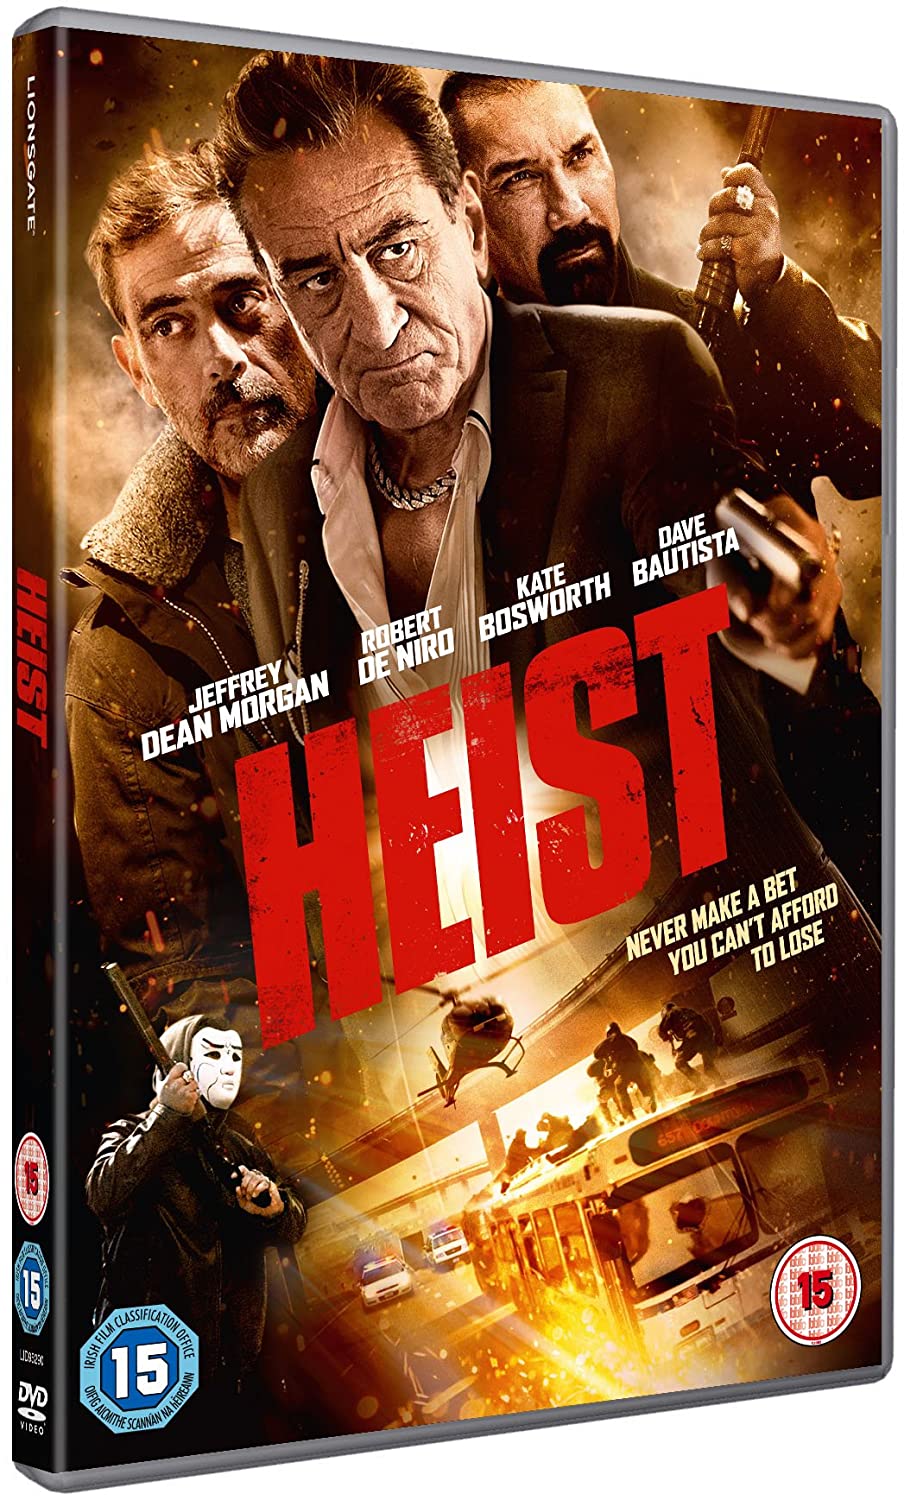 Heist [2017] Action/thriller [DVD]